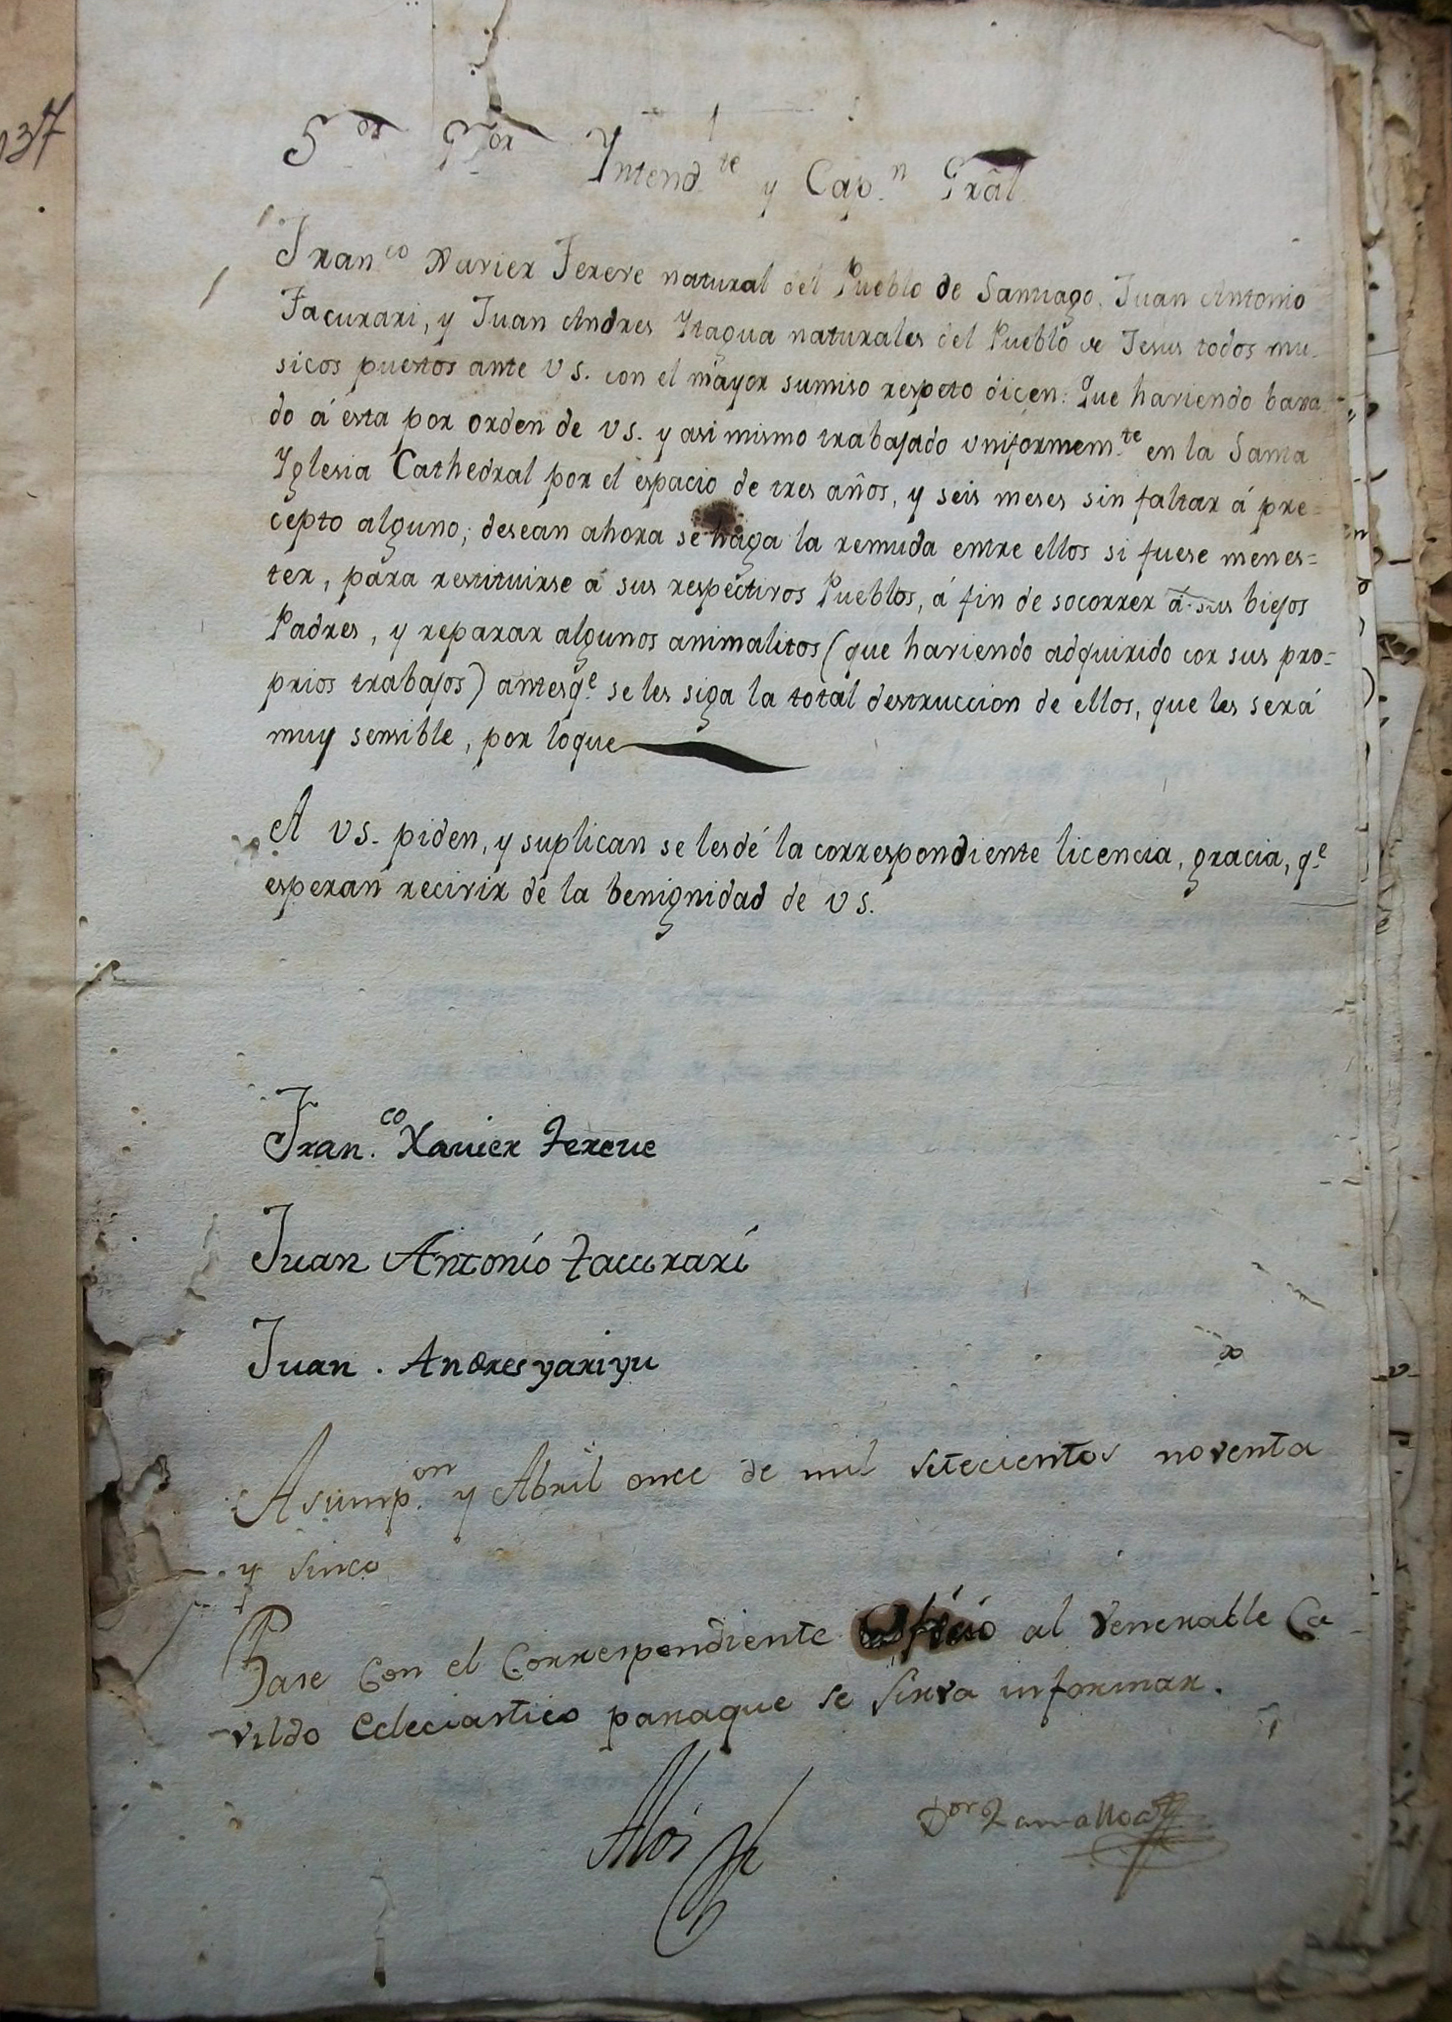 Petición presentada en 1795 por Francisco Javier Tereve, Juan Antonio Tacurari y Juan Andres Itagua, músicos de la Catedral, para volver a sus pueblos (ANA, Nueva Encuadernación, vol. 3379, f. 33-34).